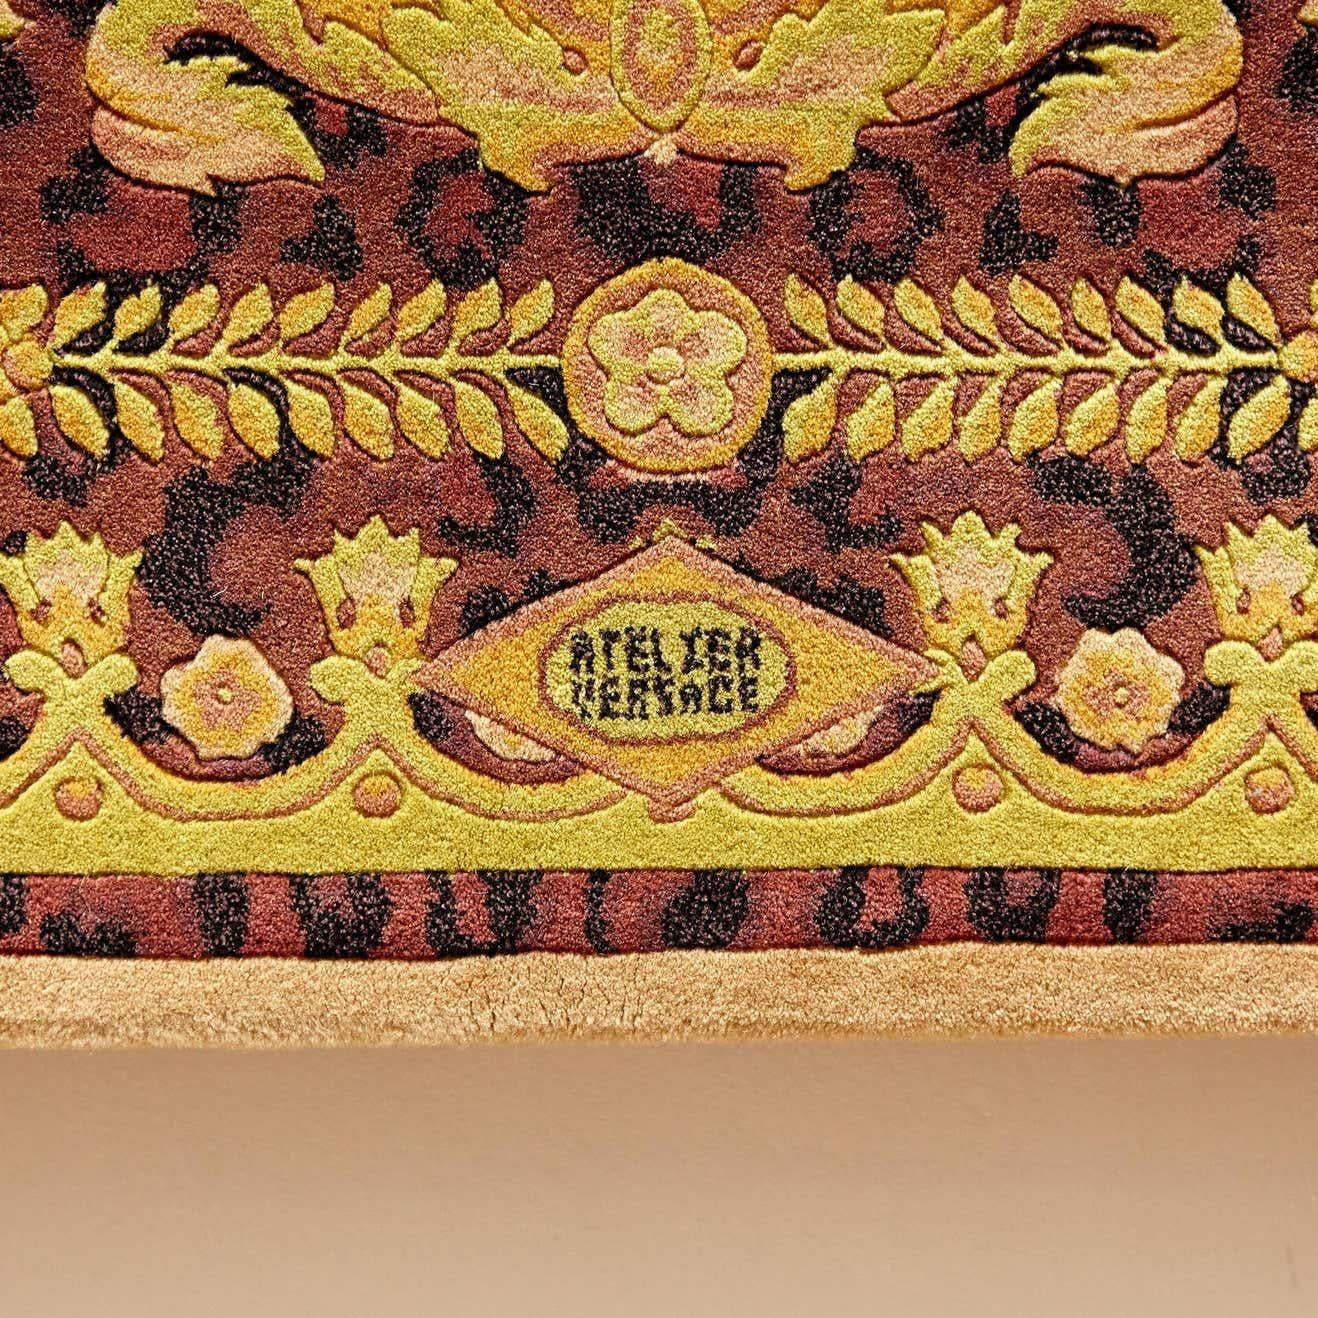 Teppich entworfen und hergestellt von Atelier Versace

Wildes Barocco

Maße: 220 x 220 

In gutem Originalzustand, mit geringen alters- und gebrauchsbedingten Gebrauchsspuren

Ein Vintage-Teppich aus Wolle von Gianni Versace. Barocke